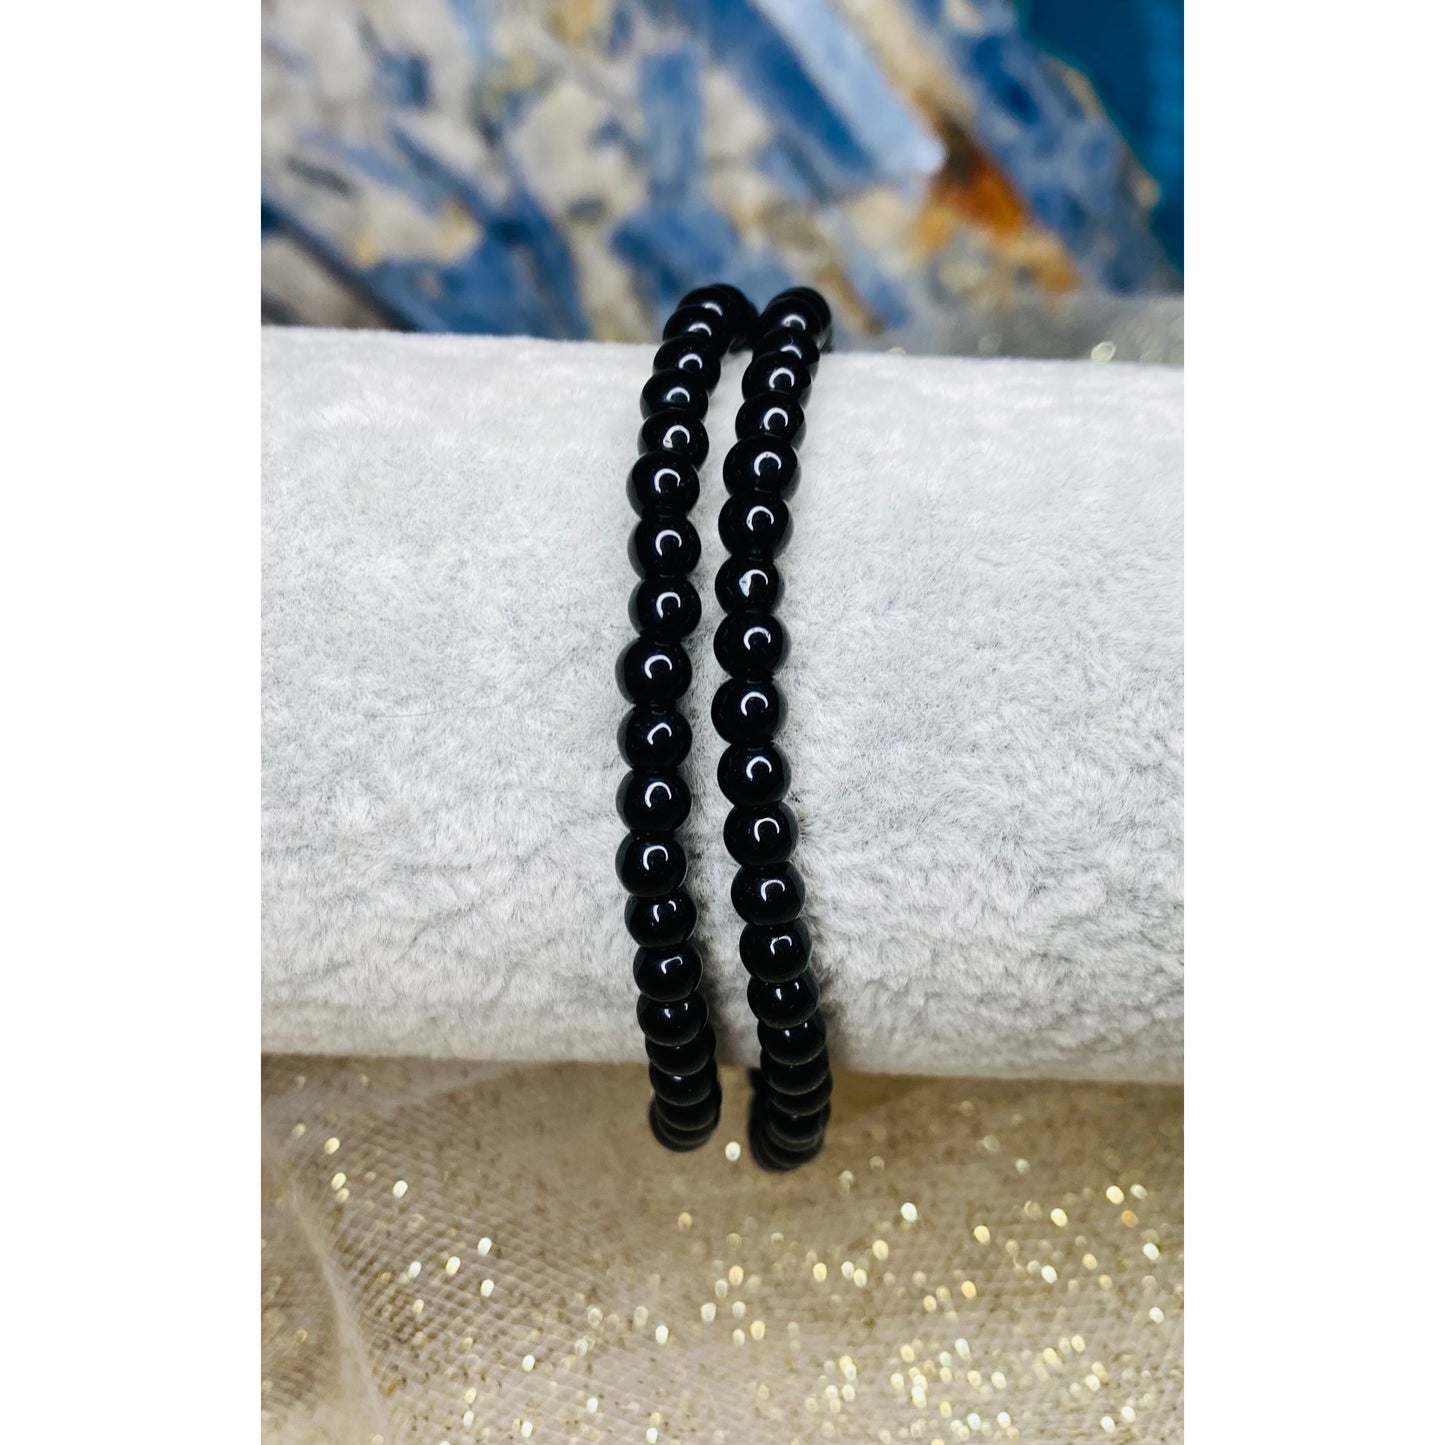 Beautiful Boho Style Bead Bracelets in Mini Size - Mix & Match